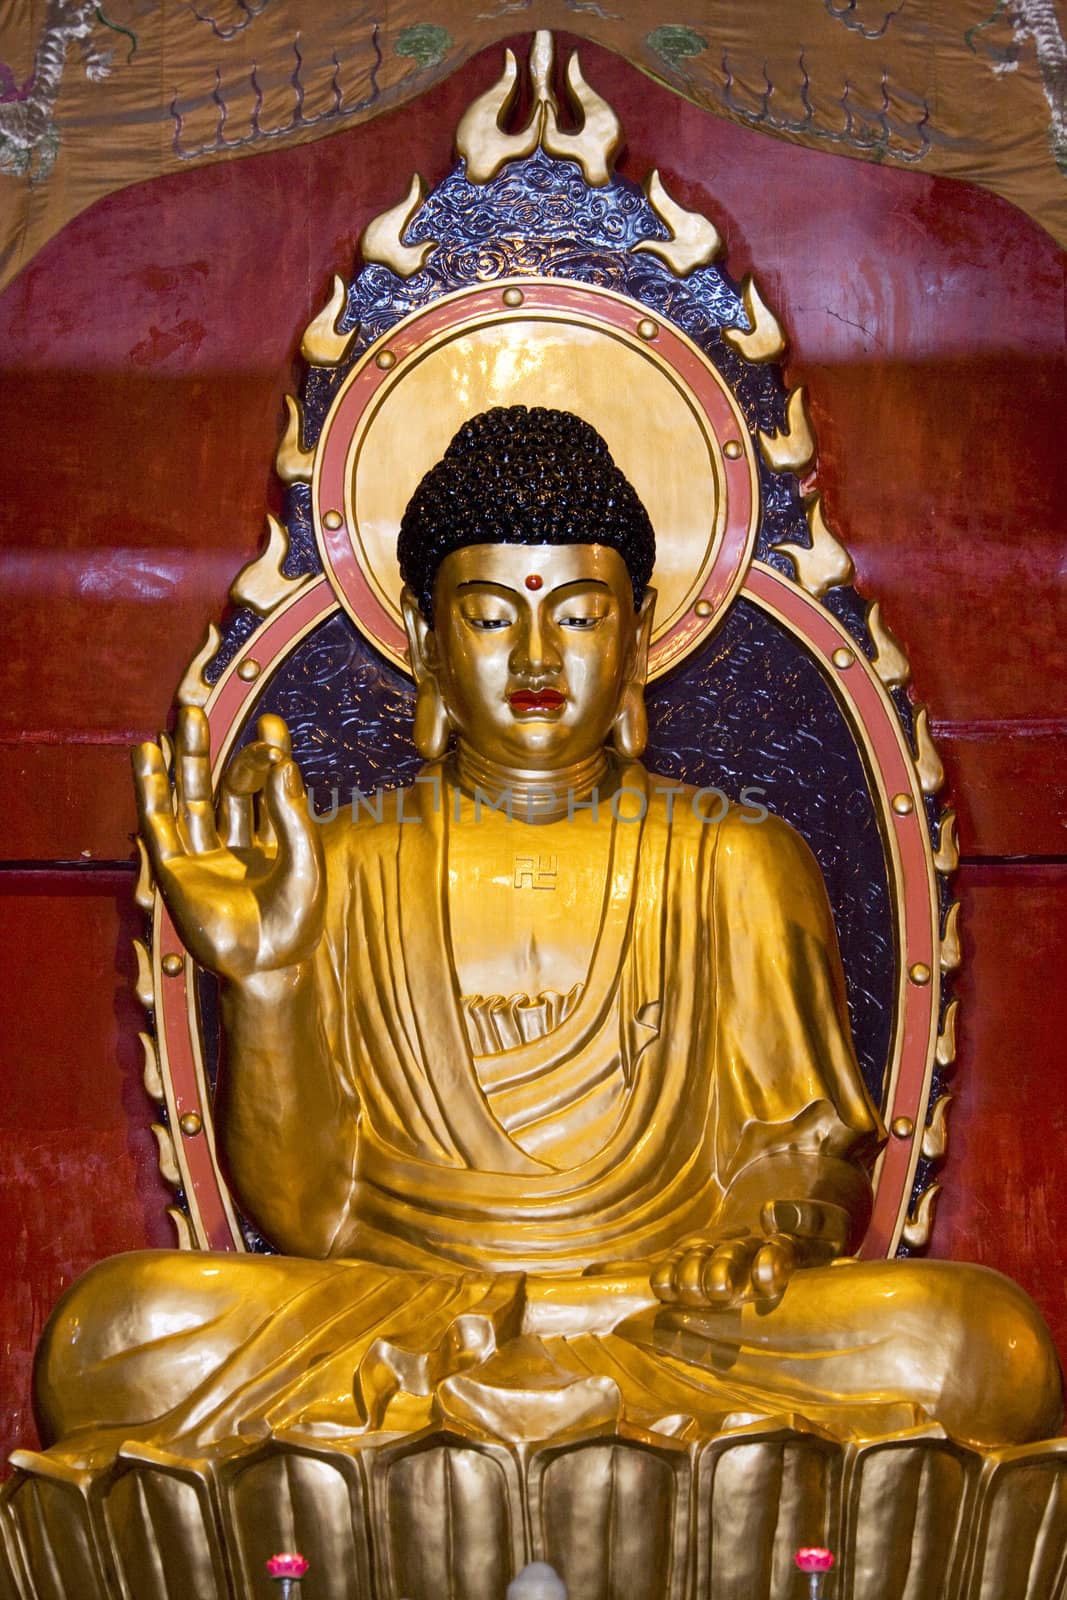 Image of a Buddha statue at Jian Zhen Temple, Yangshuo, Guilin, China.